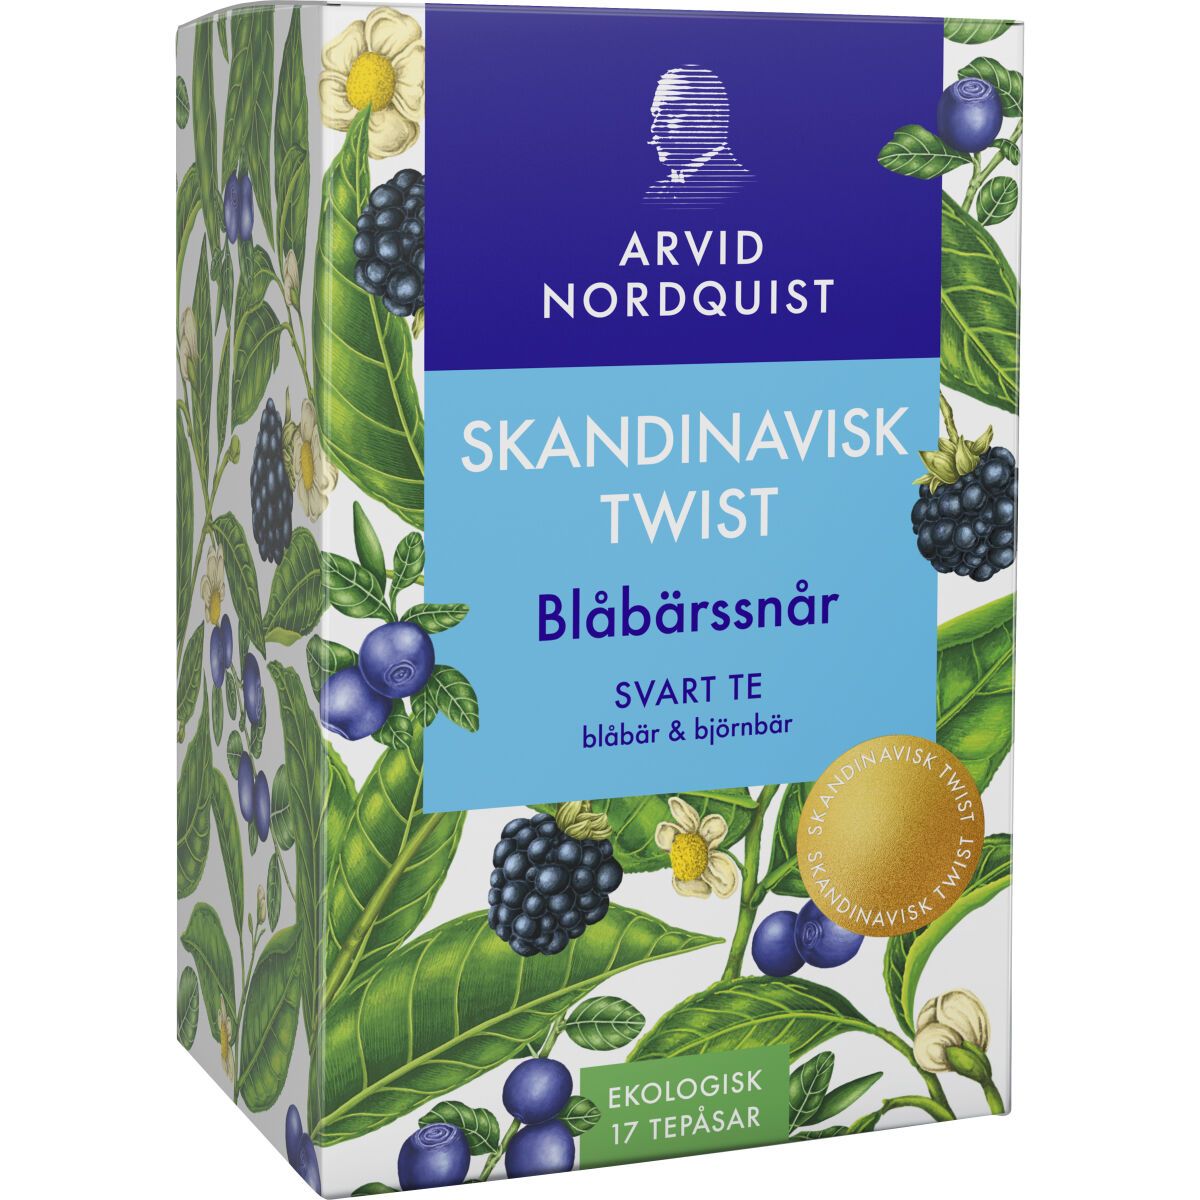 Blåbärssnår Svart Te Blåbär & Björnbär 17 st. - Skandinavisk Twist – Arvid Nordquist